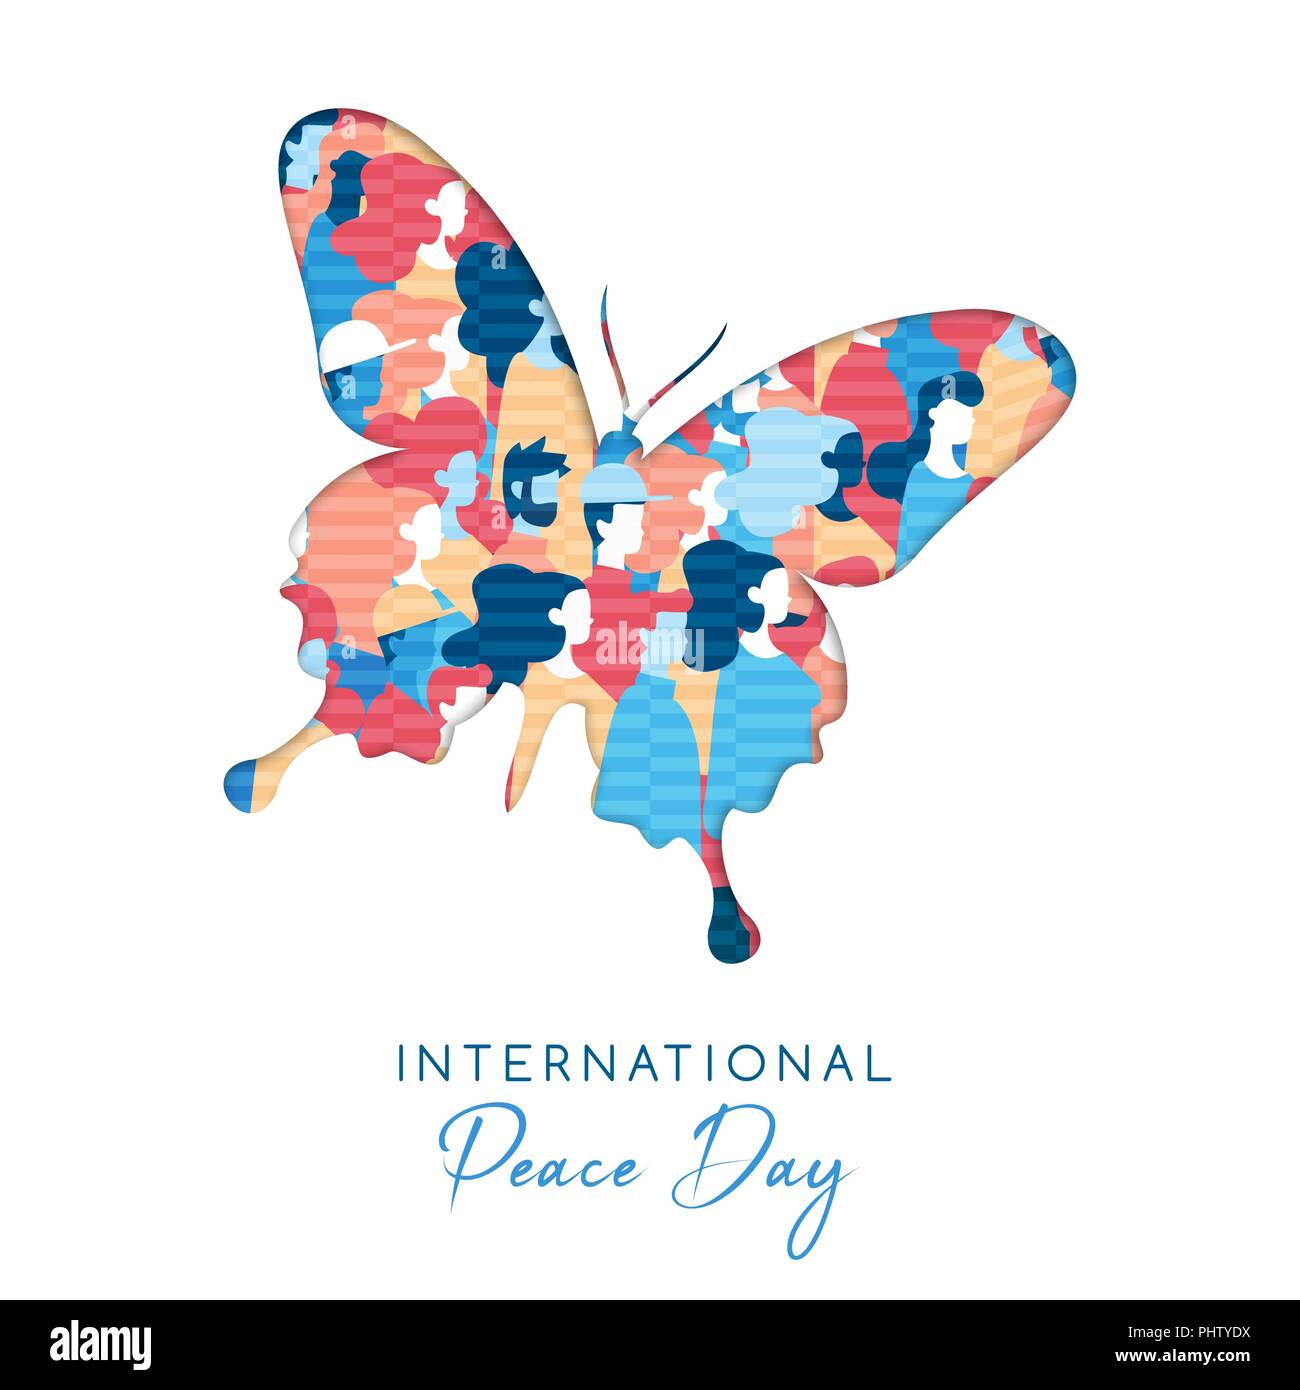 Internationaler Friedenstag Abbildung in Papier schneiden Stil für die Kultur der Einheit in der ganzen Welt. Schmetterling Ausschnitt mit verschiedensten Menschen Menschenmenge. EPS 10 Vektor. Stock Vektor